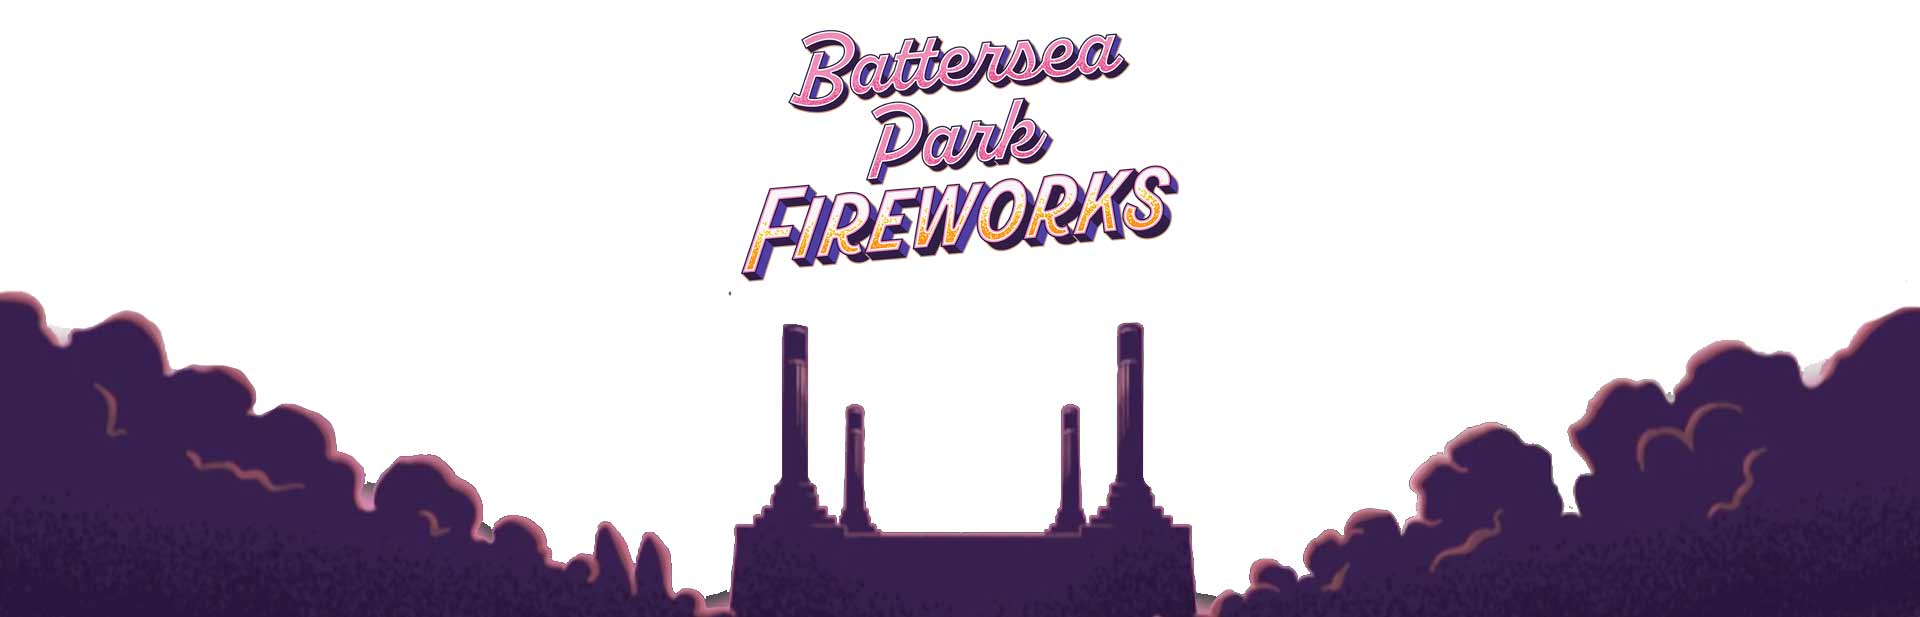 Battersea Parks Fireworks footer